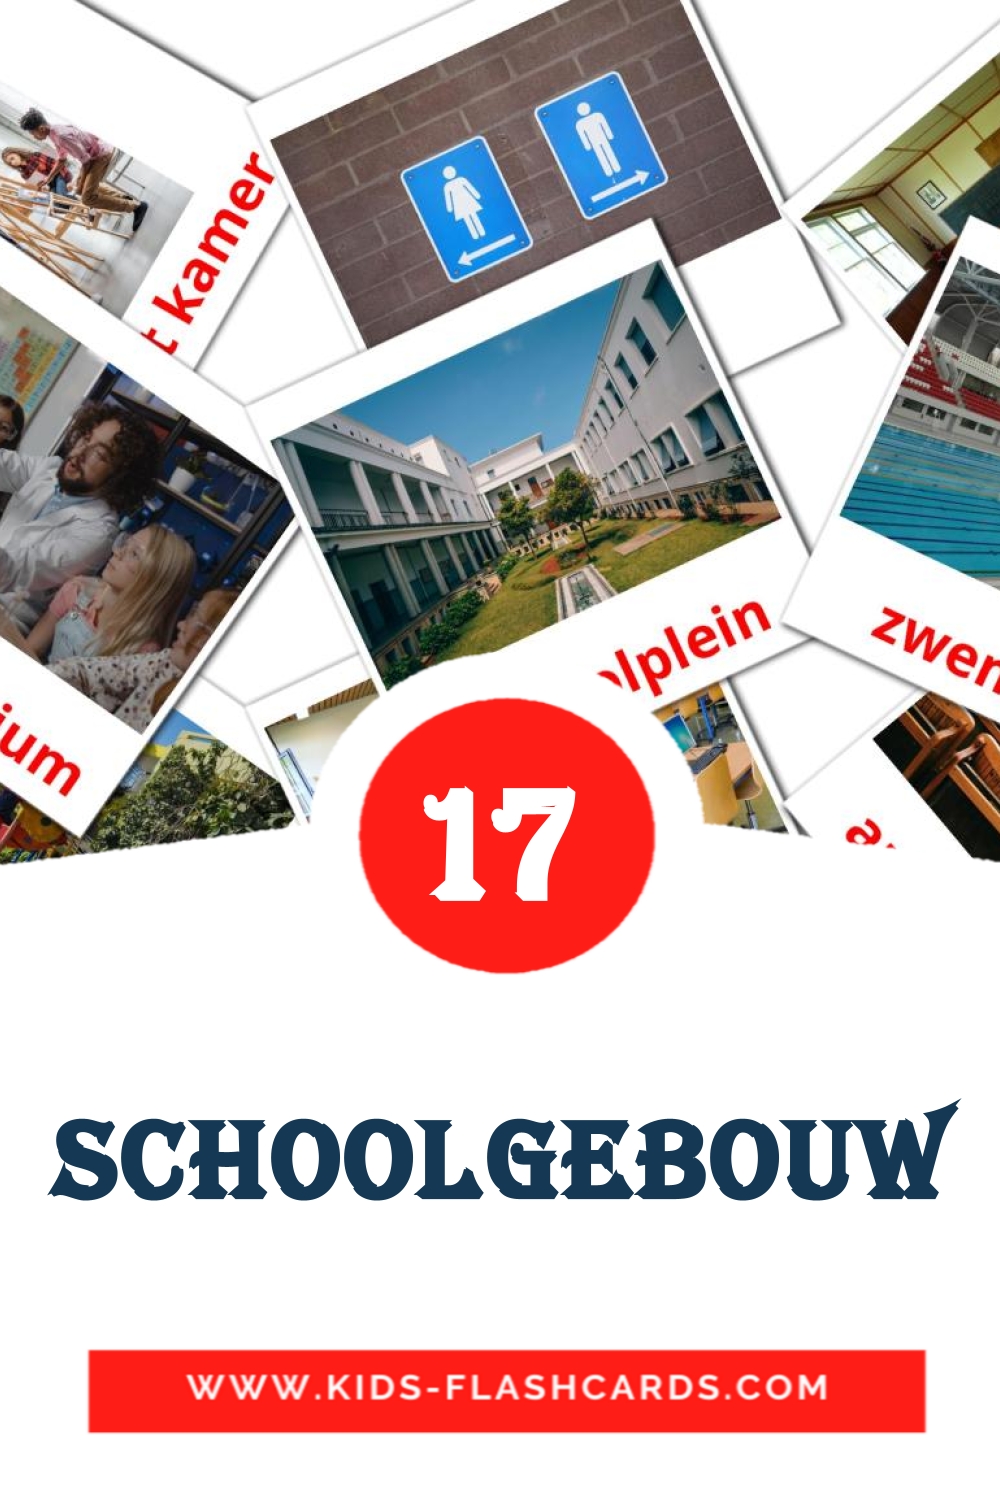 17 Schoolgebouw Picture Cards for Kindergarden in dutch